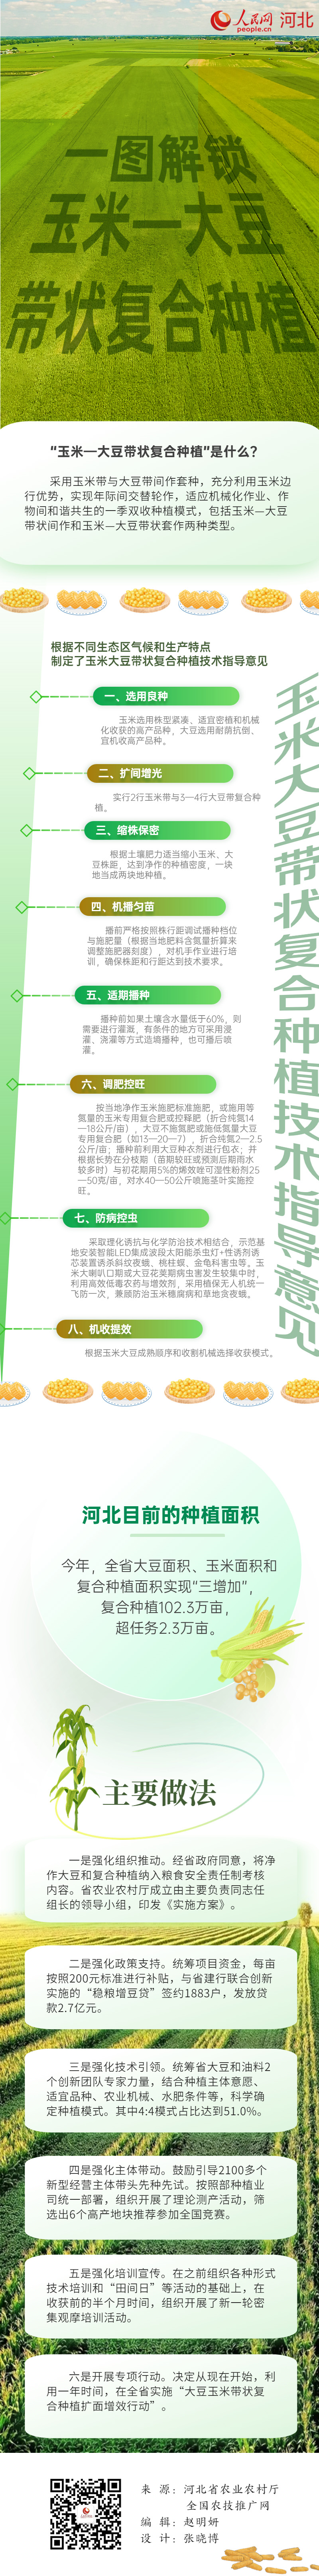 一图读懂大豆玉米亚新体育带状复合种植(图1)